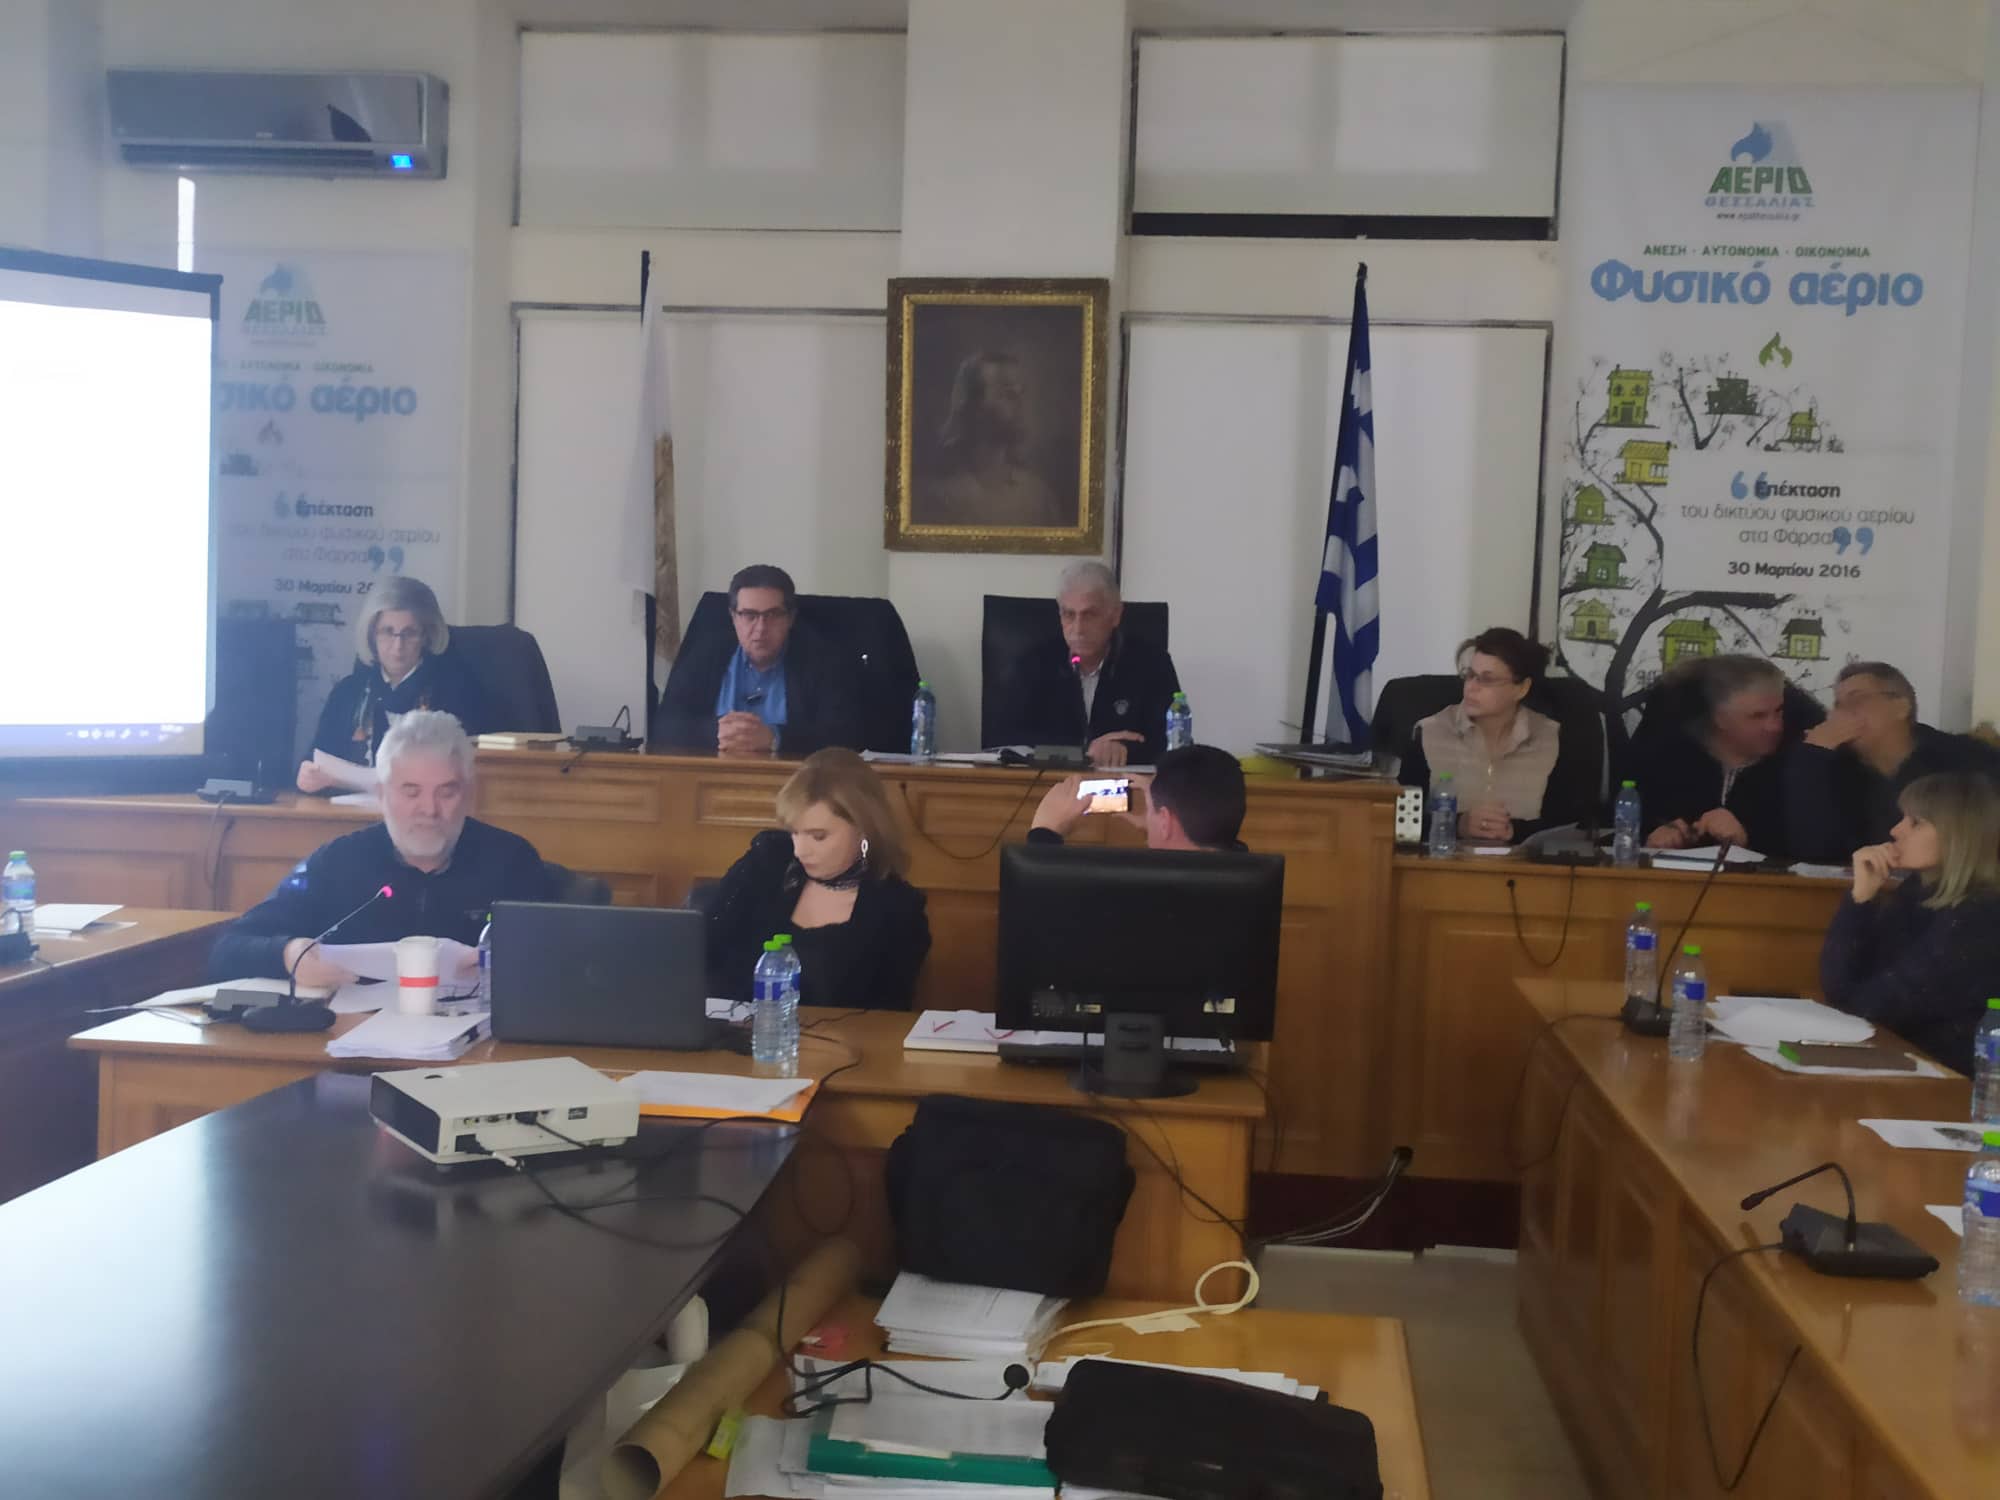 Σε γόνιμο κλίμα η πρώτη συνεδρίαση της Επιτροπής Διαβούλευσης του δήμου Φαρσάλων